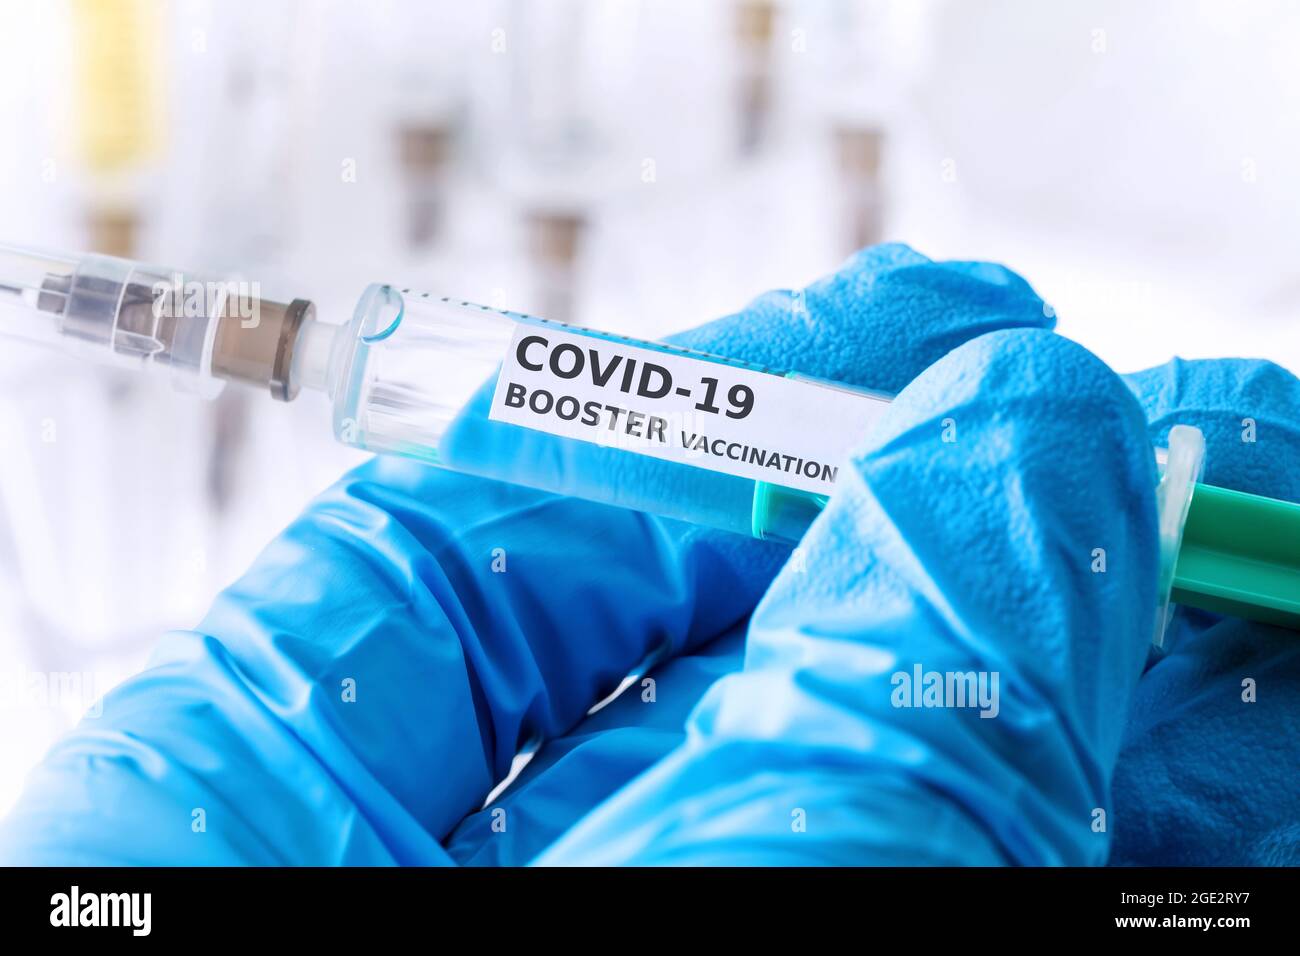 covid-19 coronavirus booster vaccination concept Stock Photo